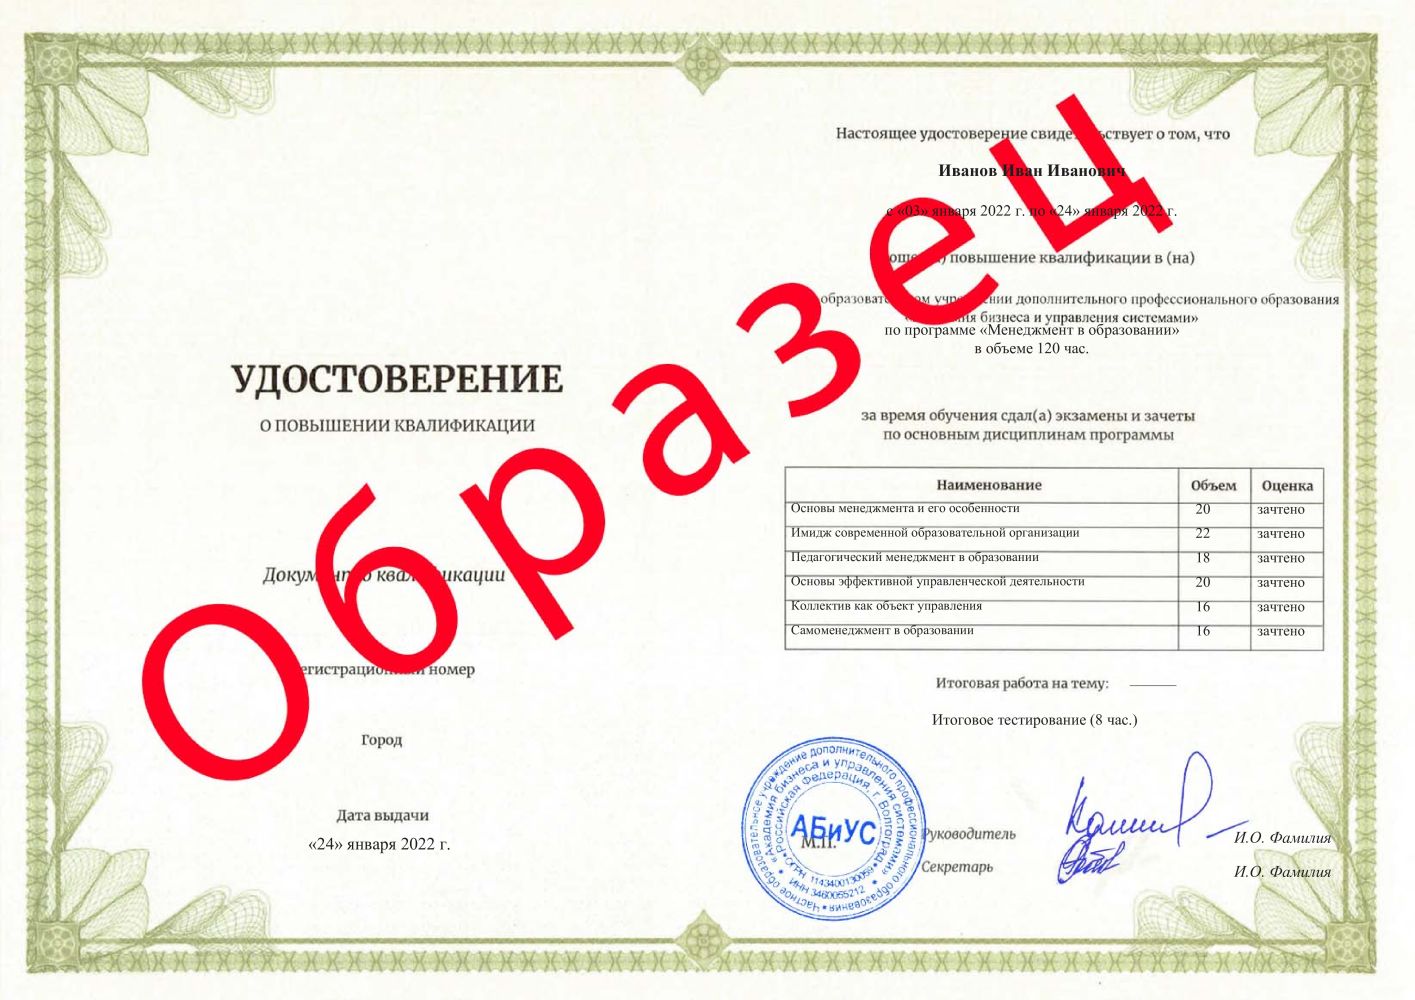 Удостоверение Менеджмент в образовании 120 часов 3375 руб.